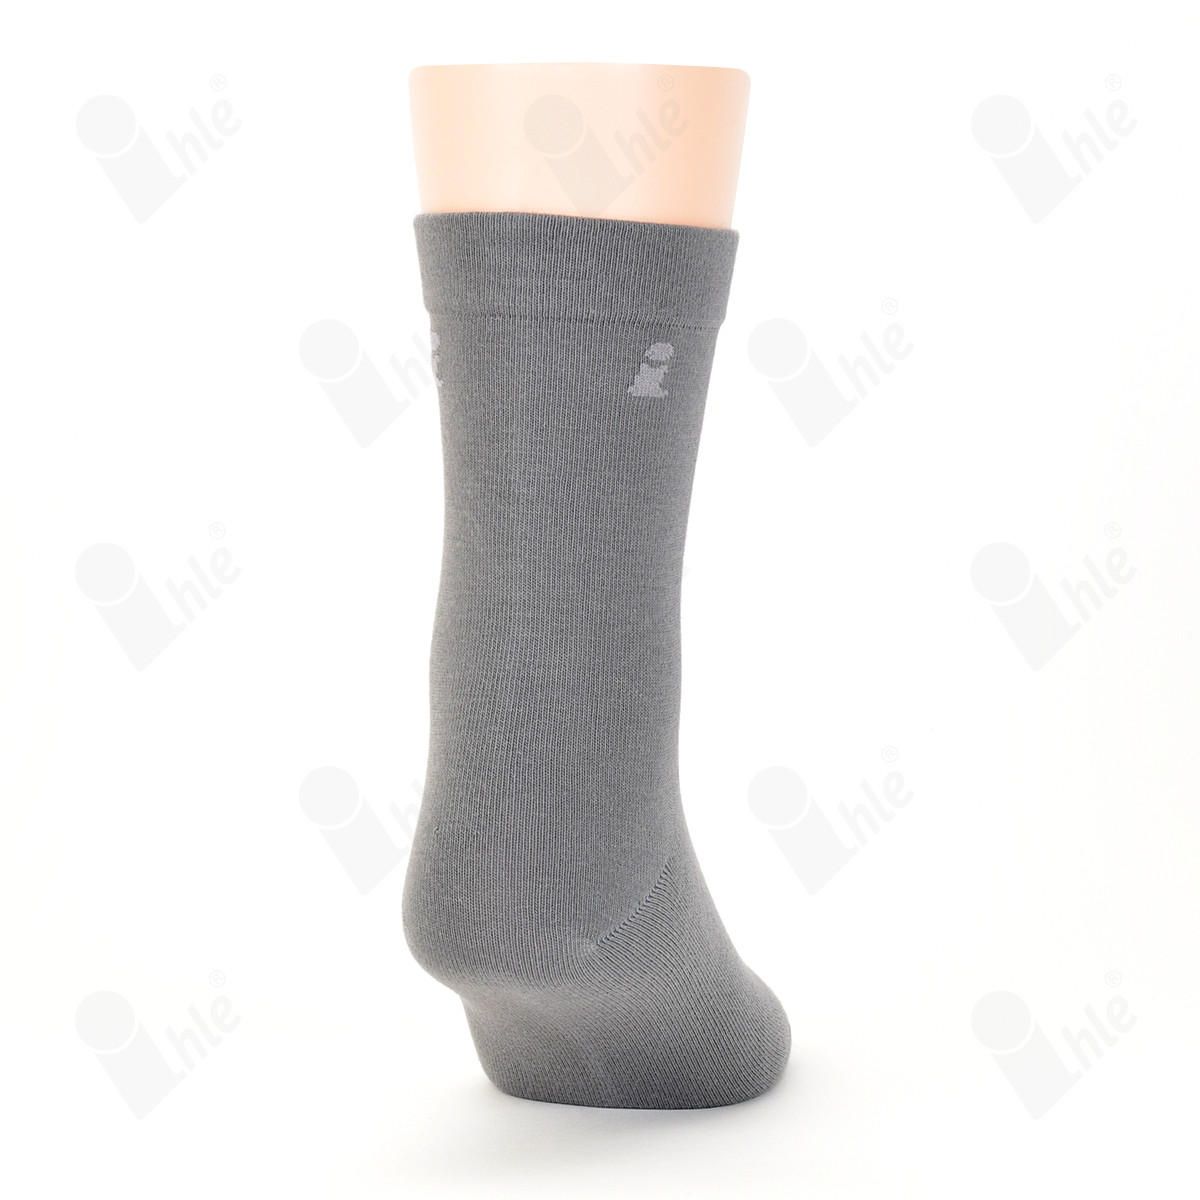 Ihle Socke klassisch grau Gr. 43-46